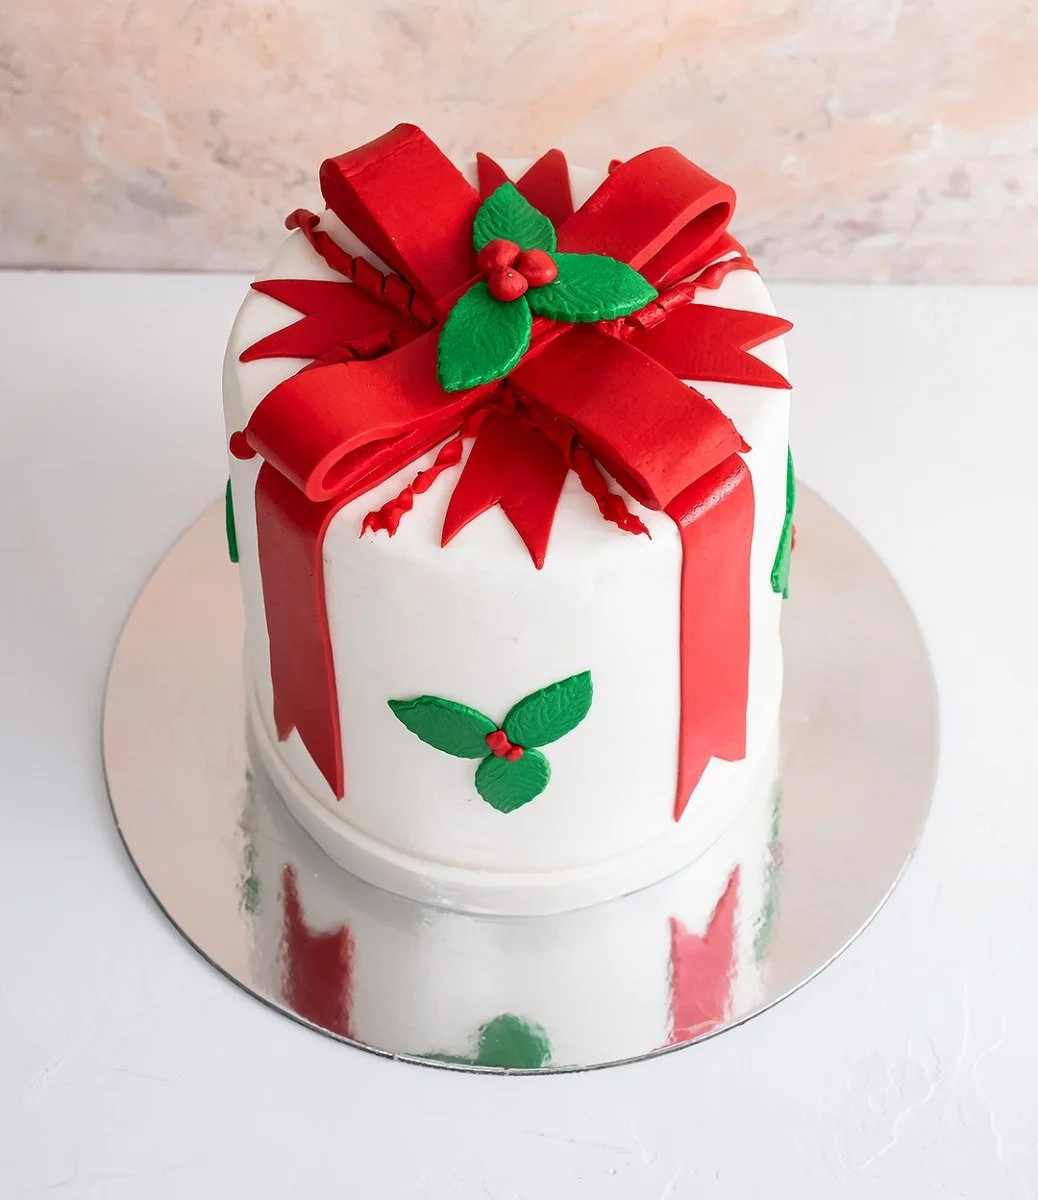 Christmas Cake by NJD